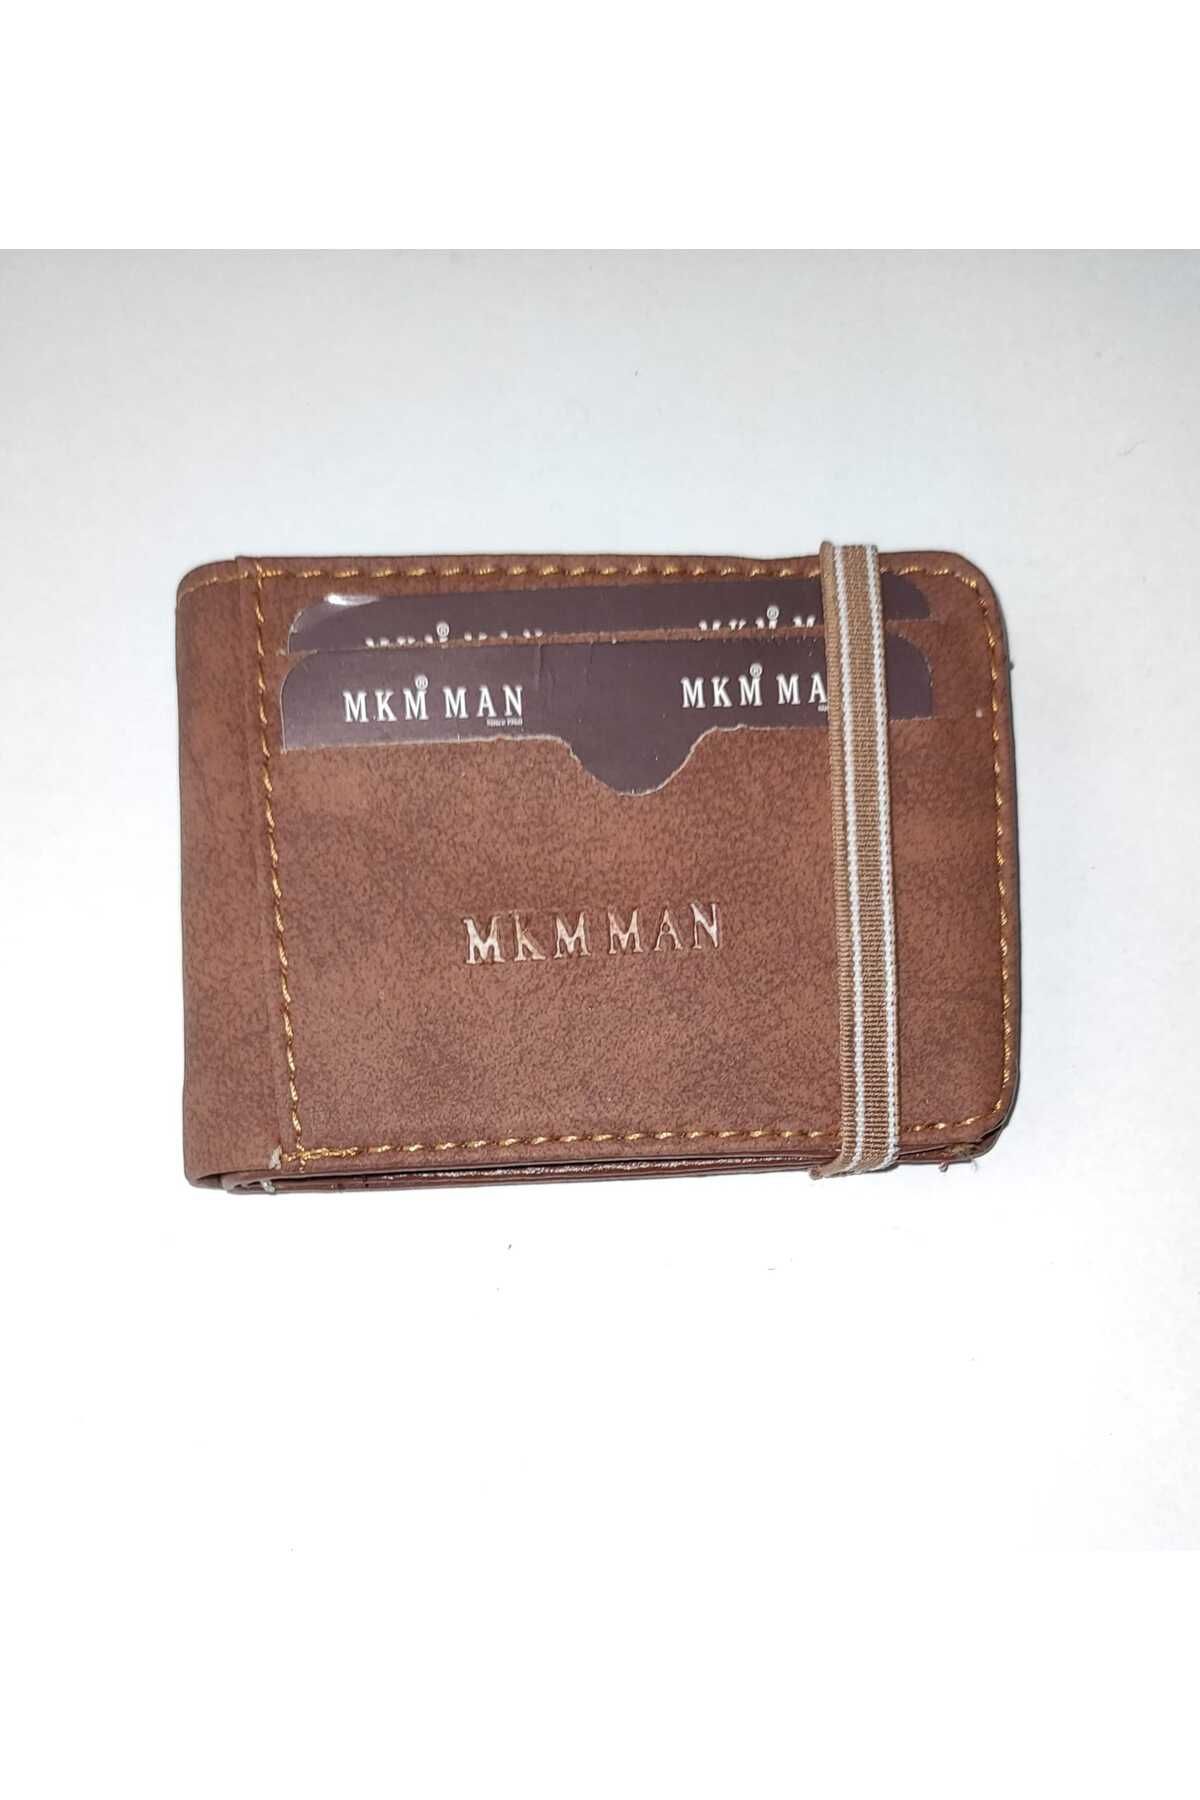 firdevsi hobi nubuk yatay lastikli muhafazalı kartlık cüzdan